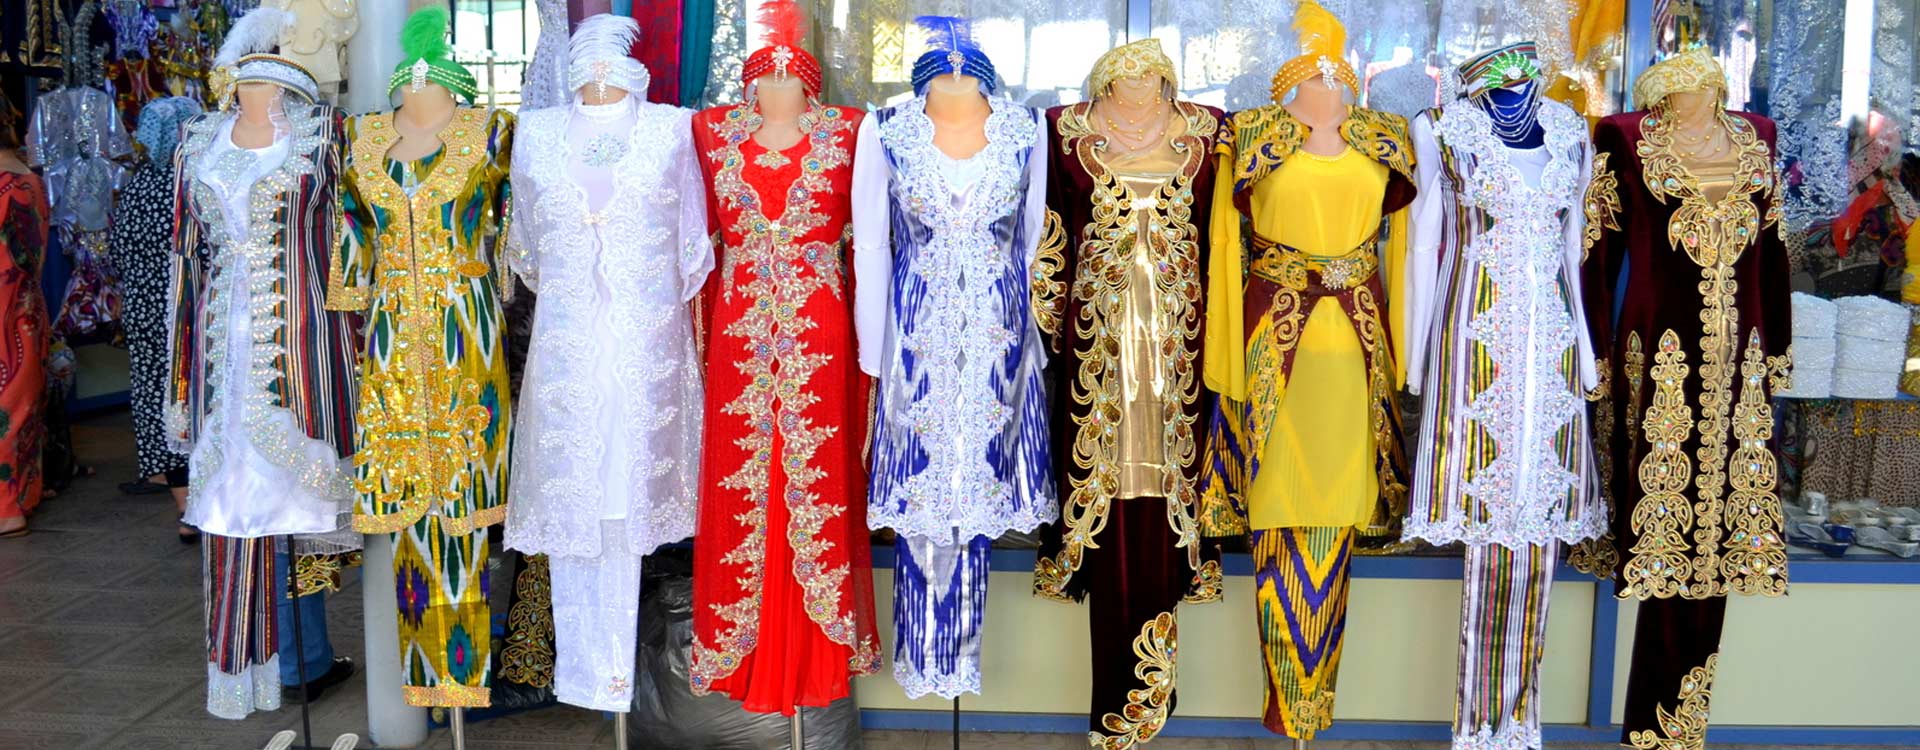 Uzbekistan Clothing